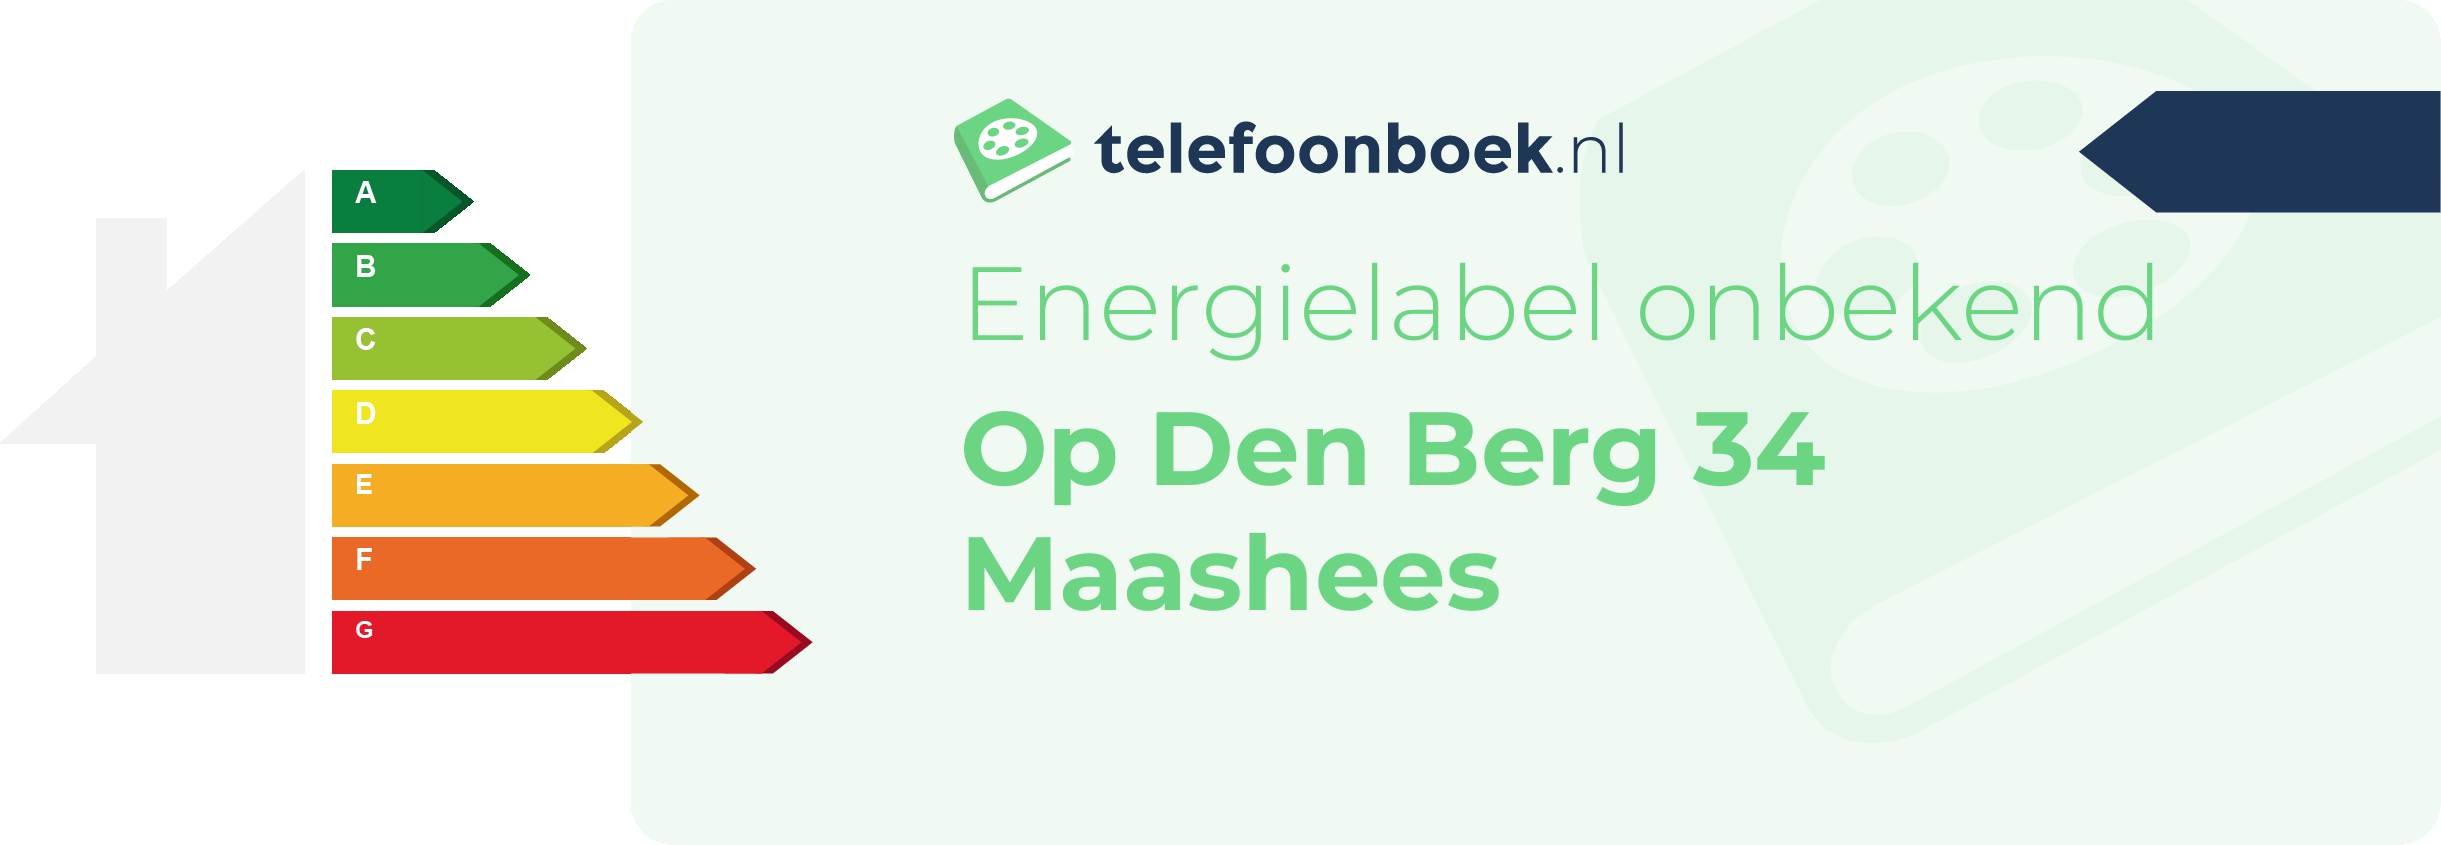 Energielabel Op Den Berg 34 Maashees